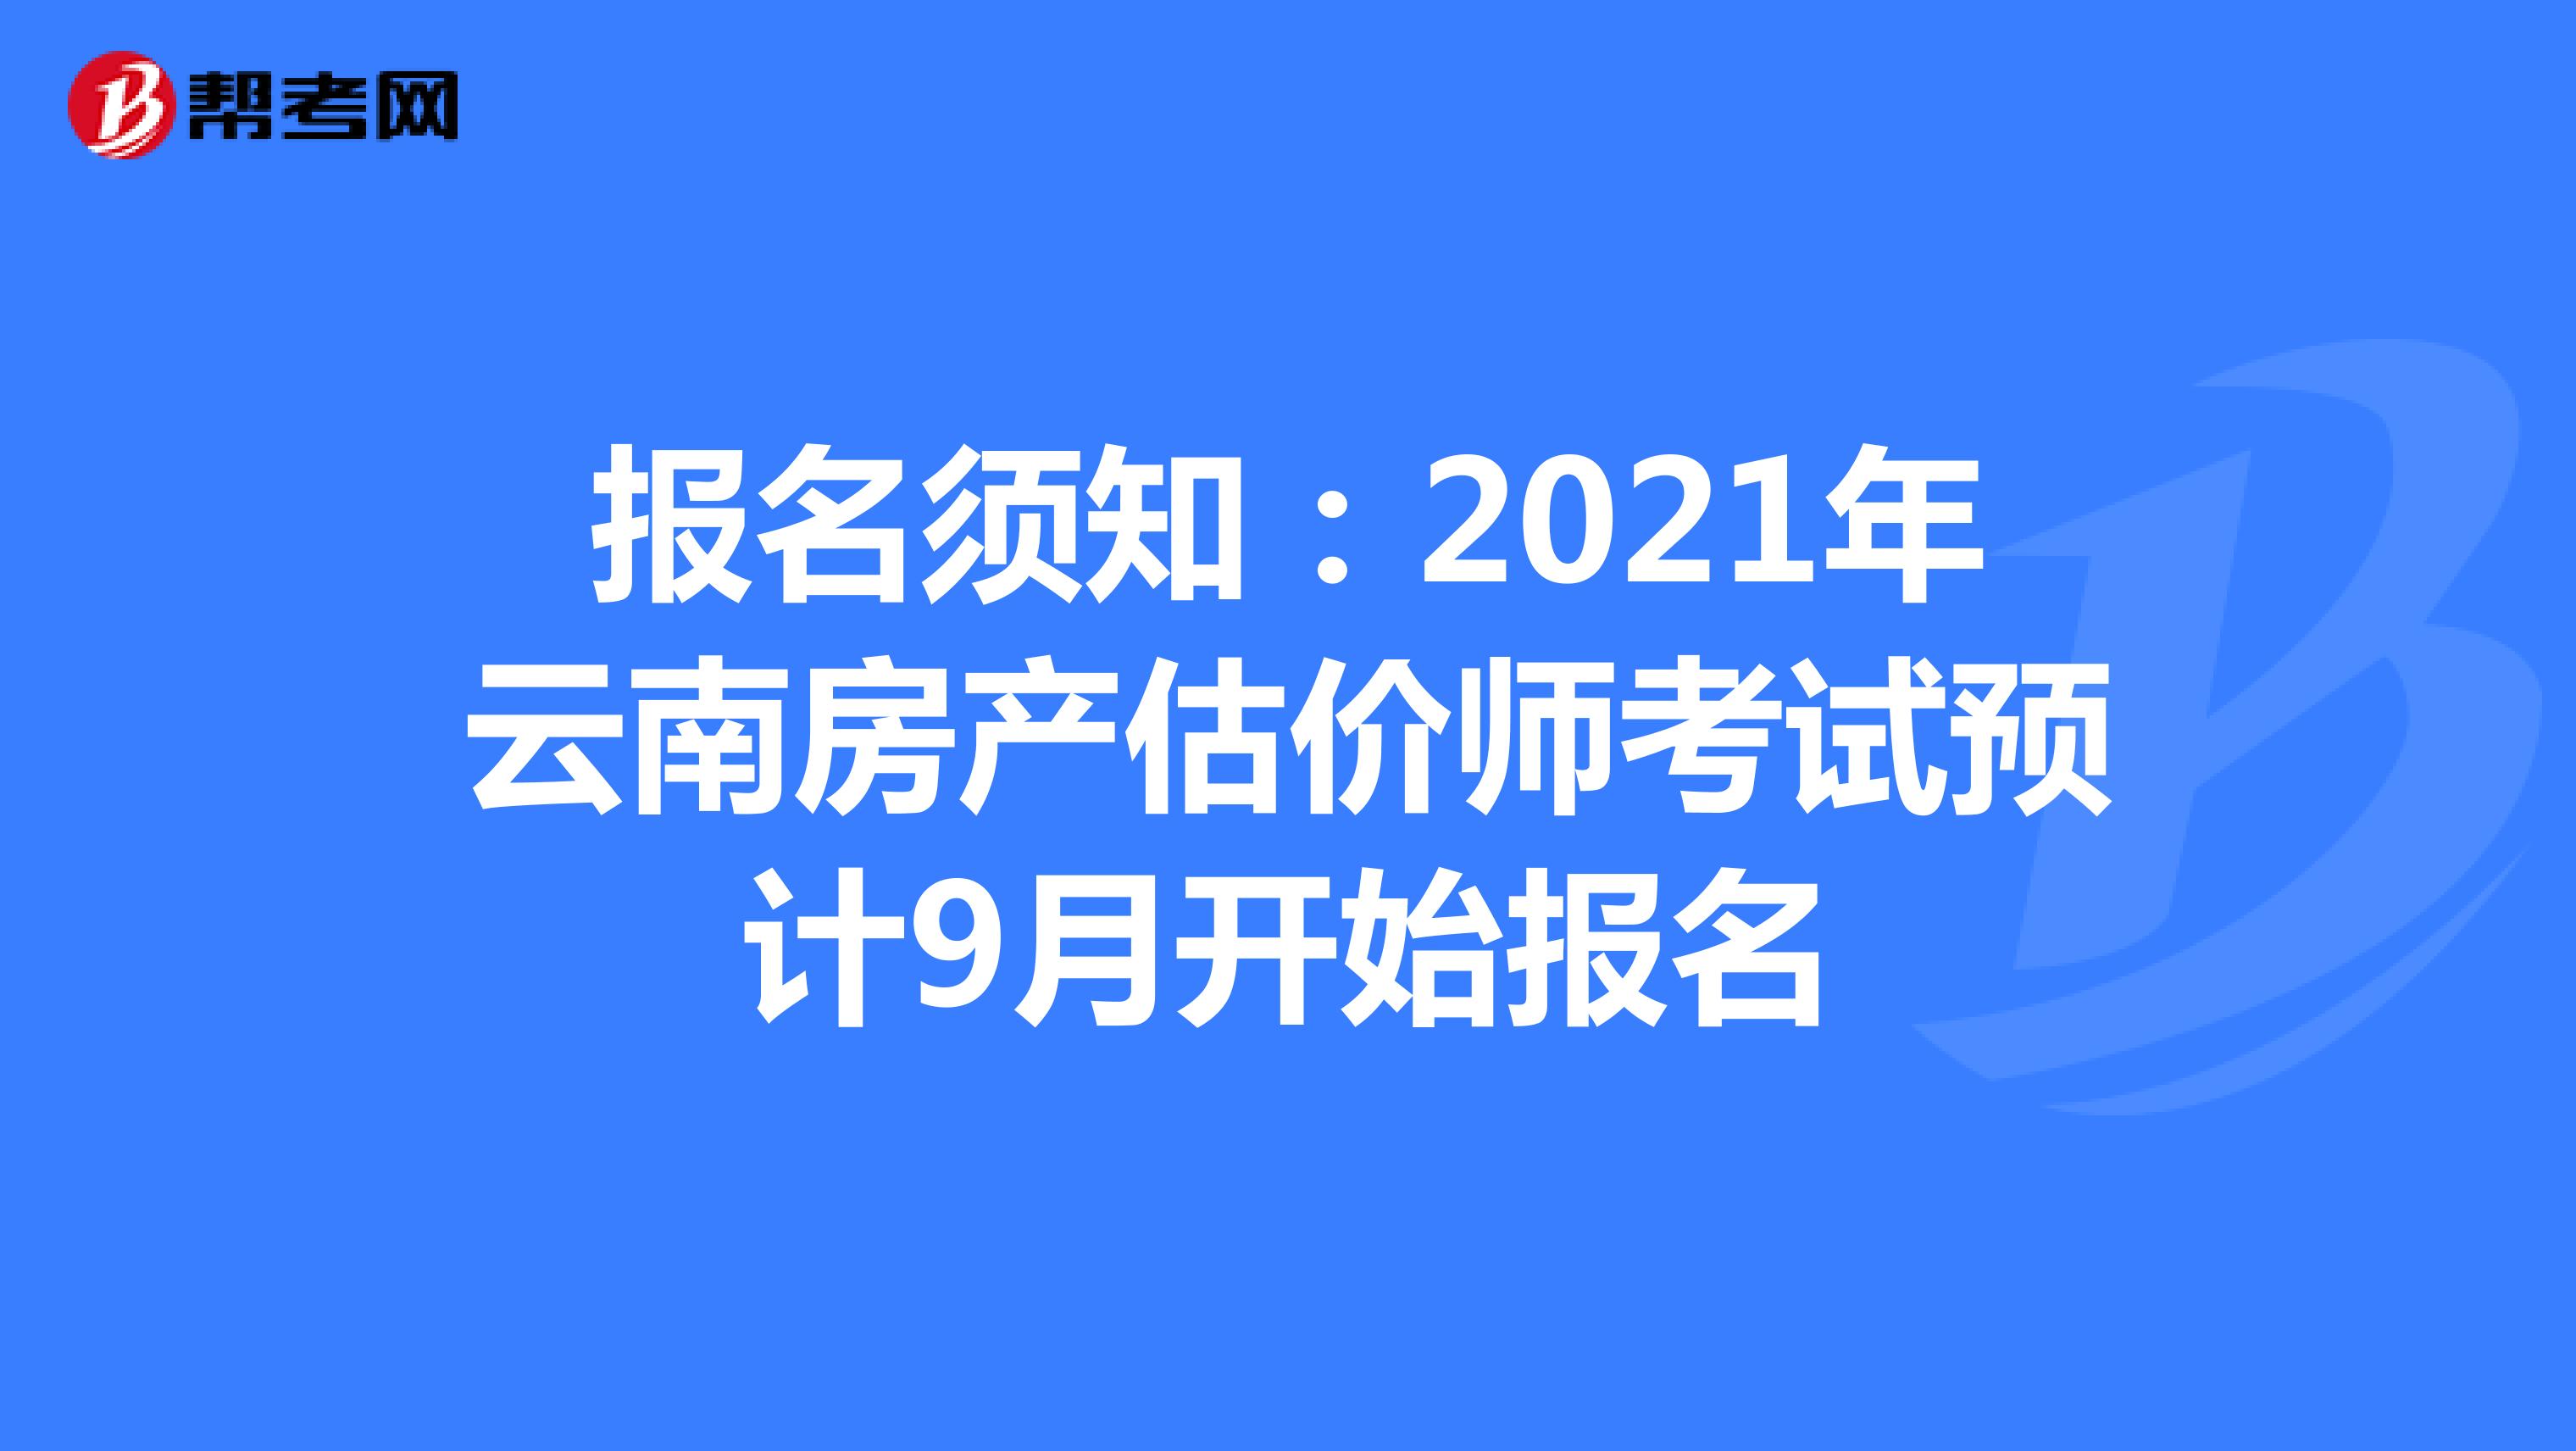 报名须知：2021年云南房产估价师考试预计9月开始报名